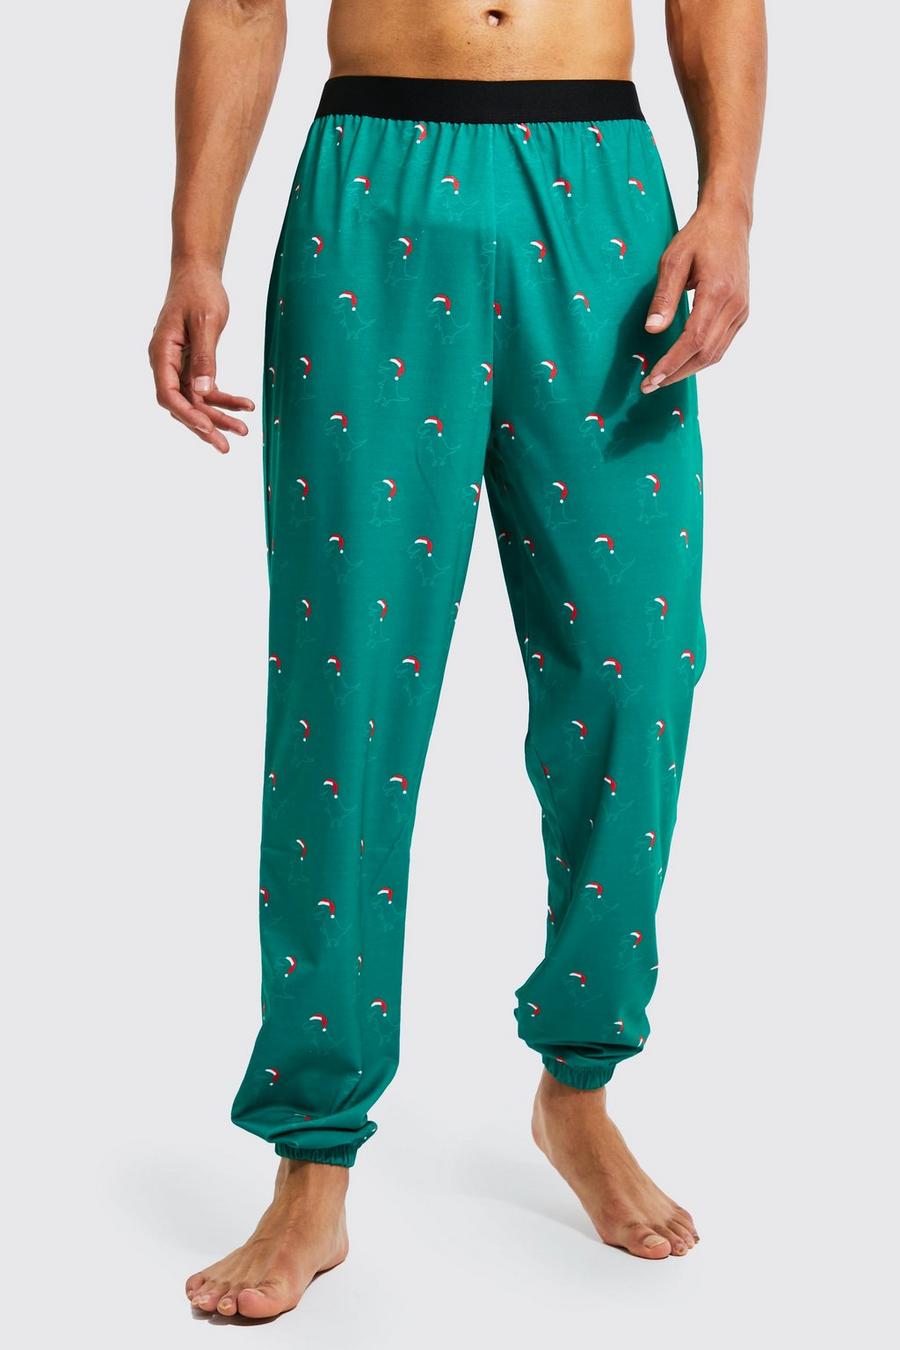 Pantalón deportivo Tall para estar en casa navideño con estampado de dinosaurios, Green verde